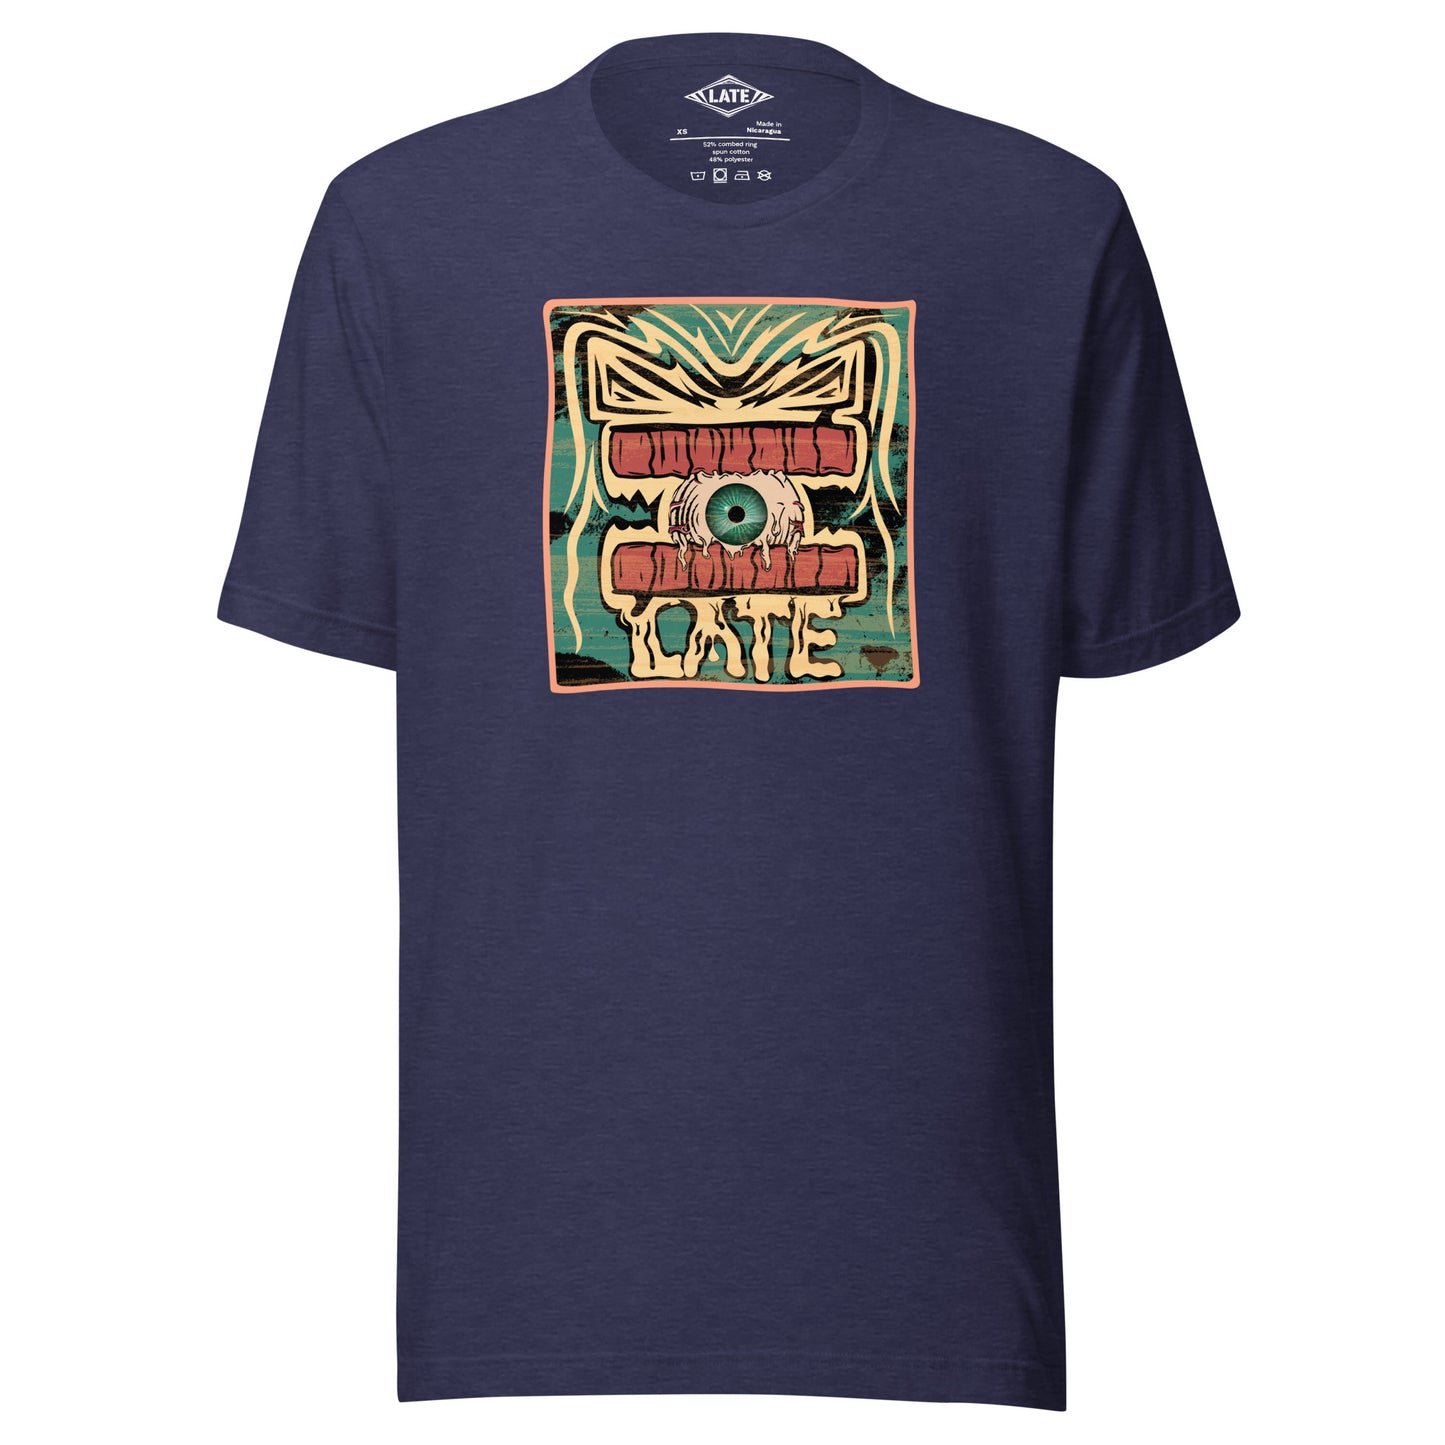 T-shirt rétro skateboarding, design couleur délavée, années 70,80, original dent et oeil skate, tee-shirt unisexe bleu nuit